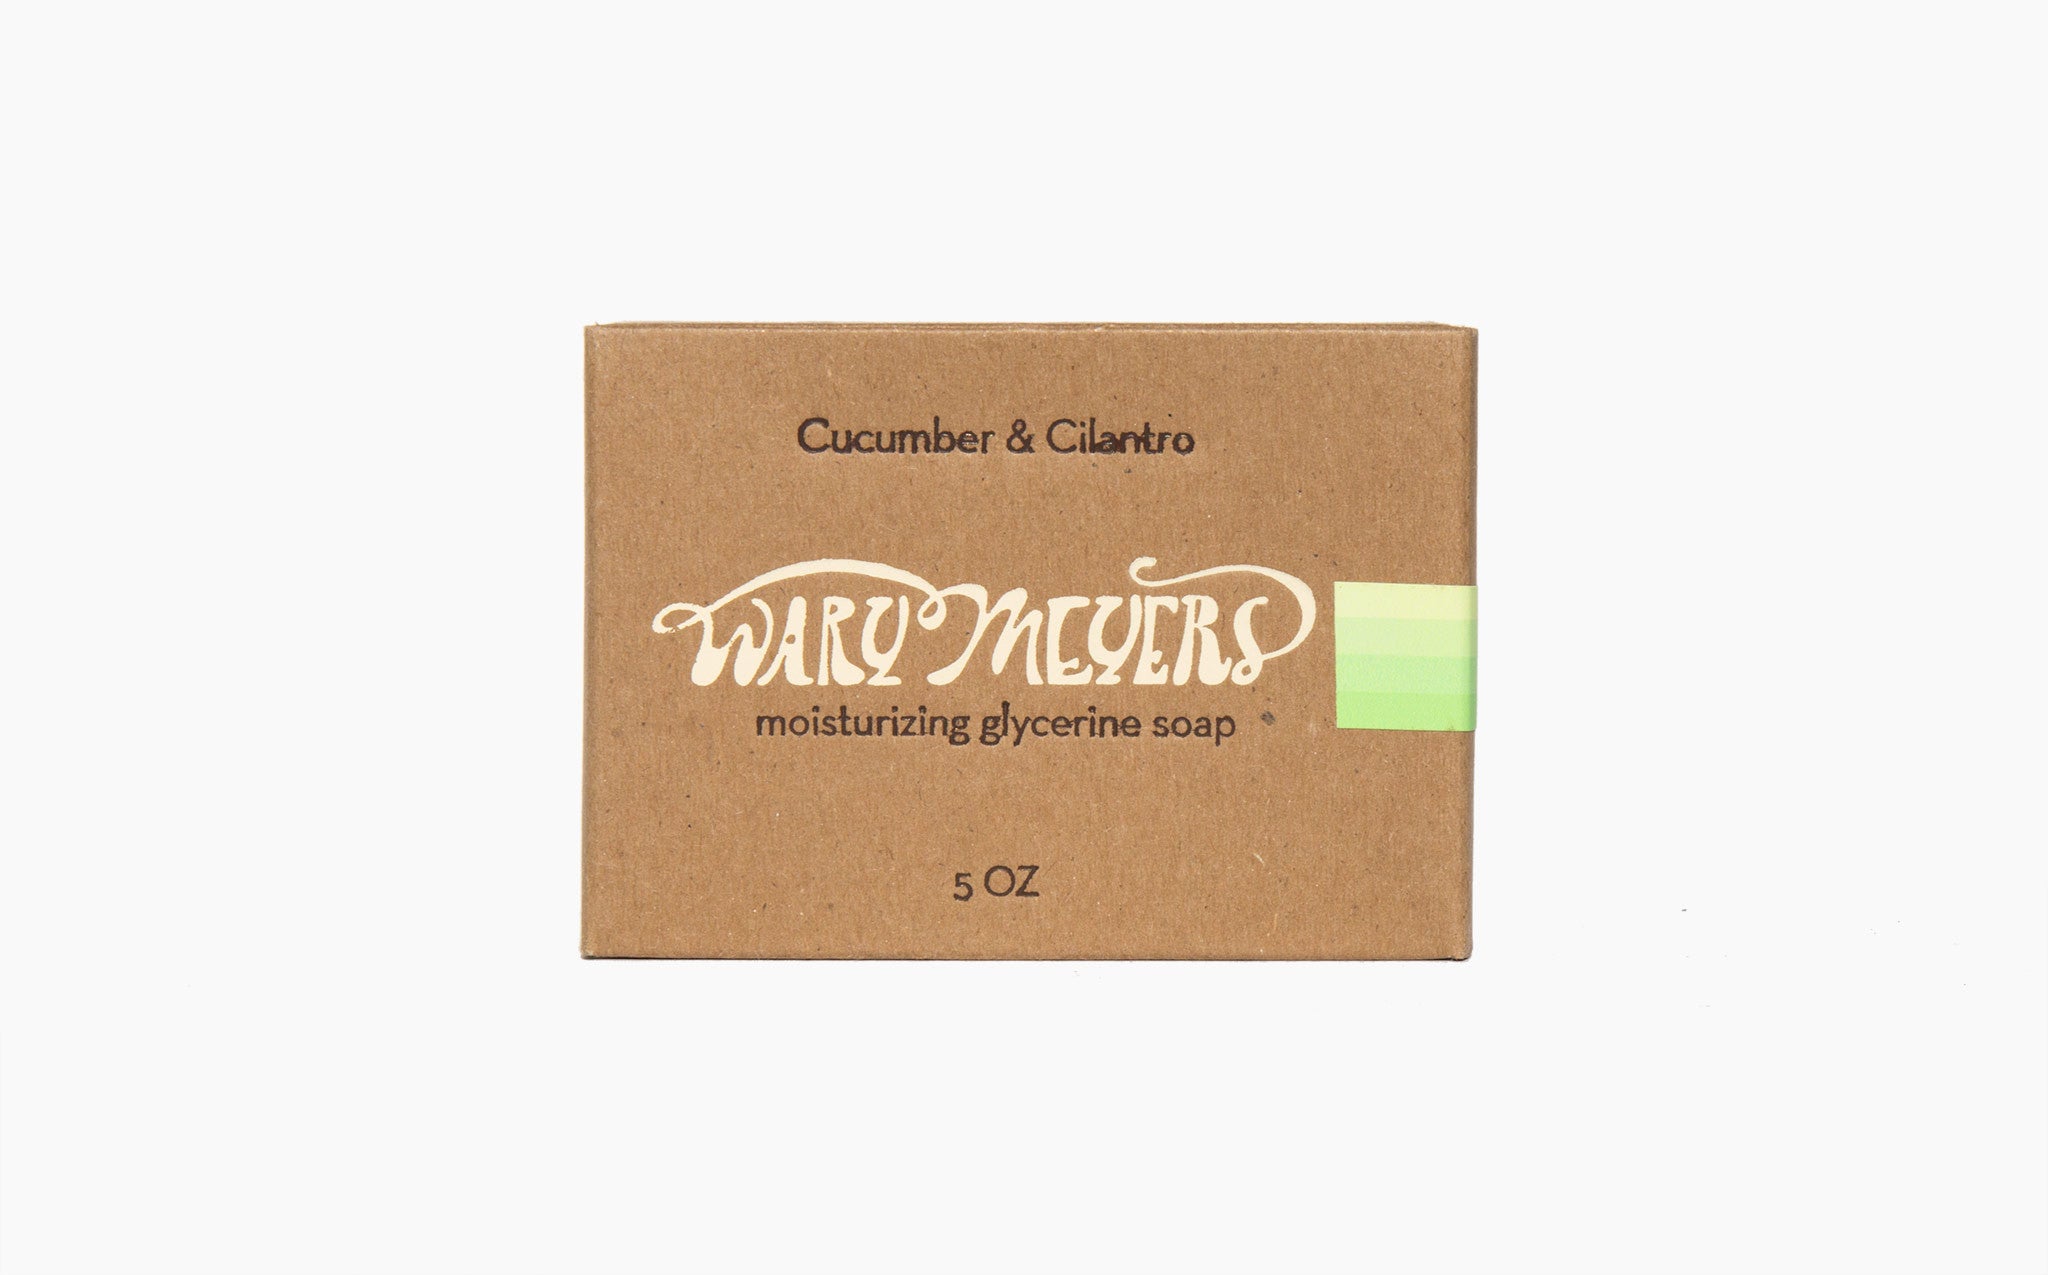 Wary Meyers Cucumber + Cilantro Glycerine Soap